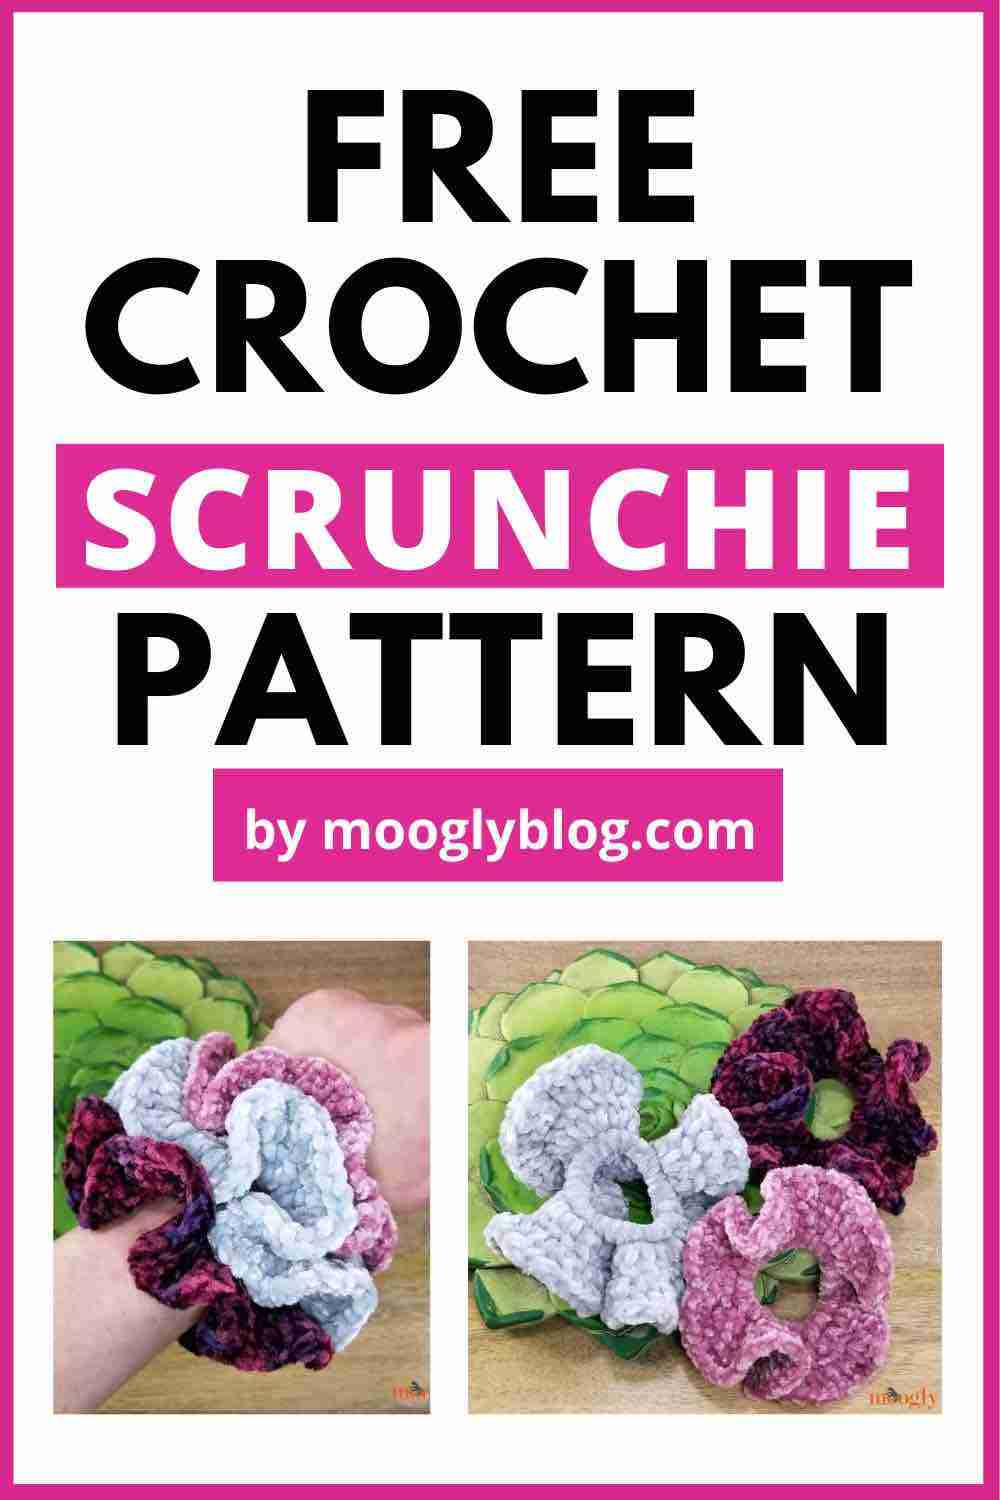 Free Crochet Scrunchie Pattern - Mooglyblog